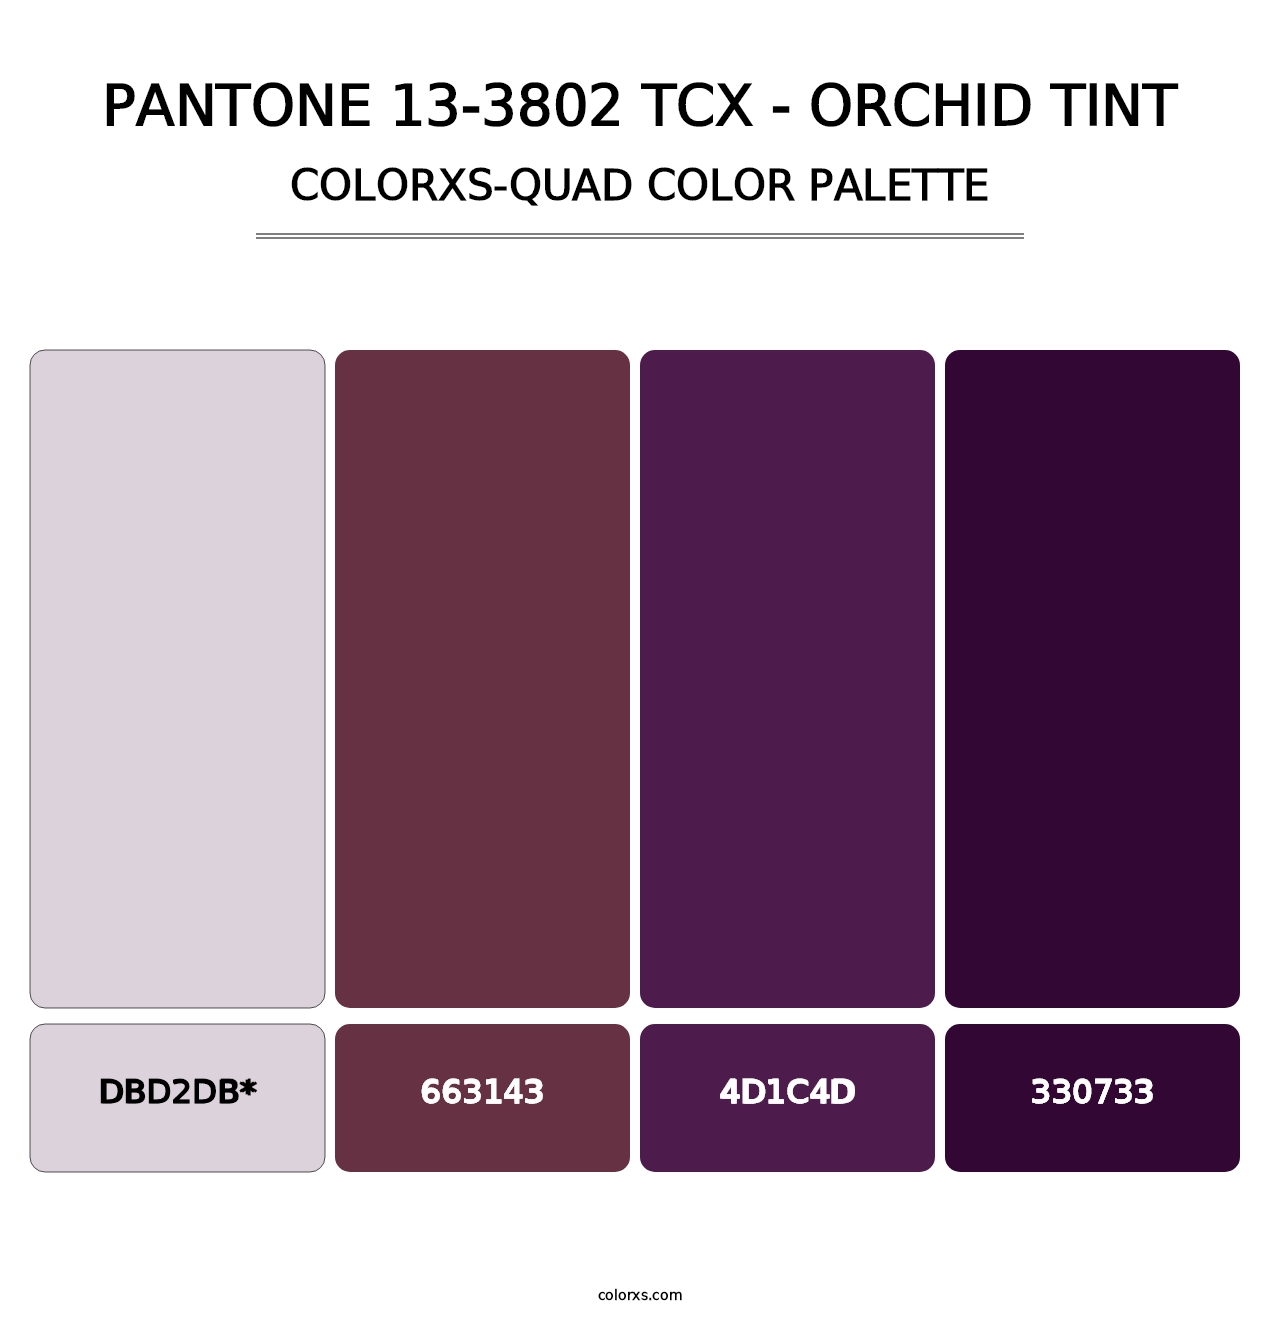 PANTONE 13-3802 TCX - Orchid Tint - Colorxs Quad Palette